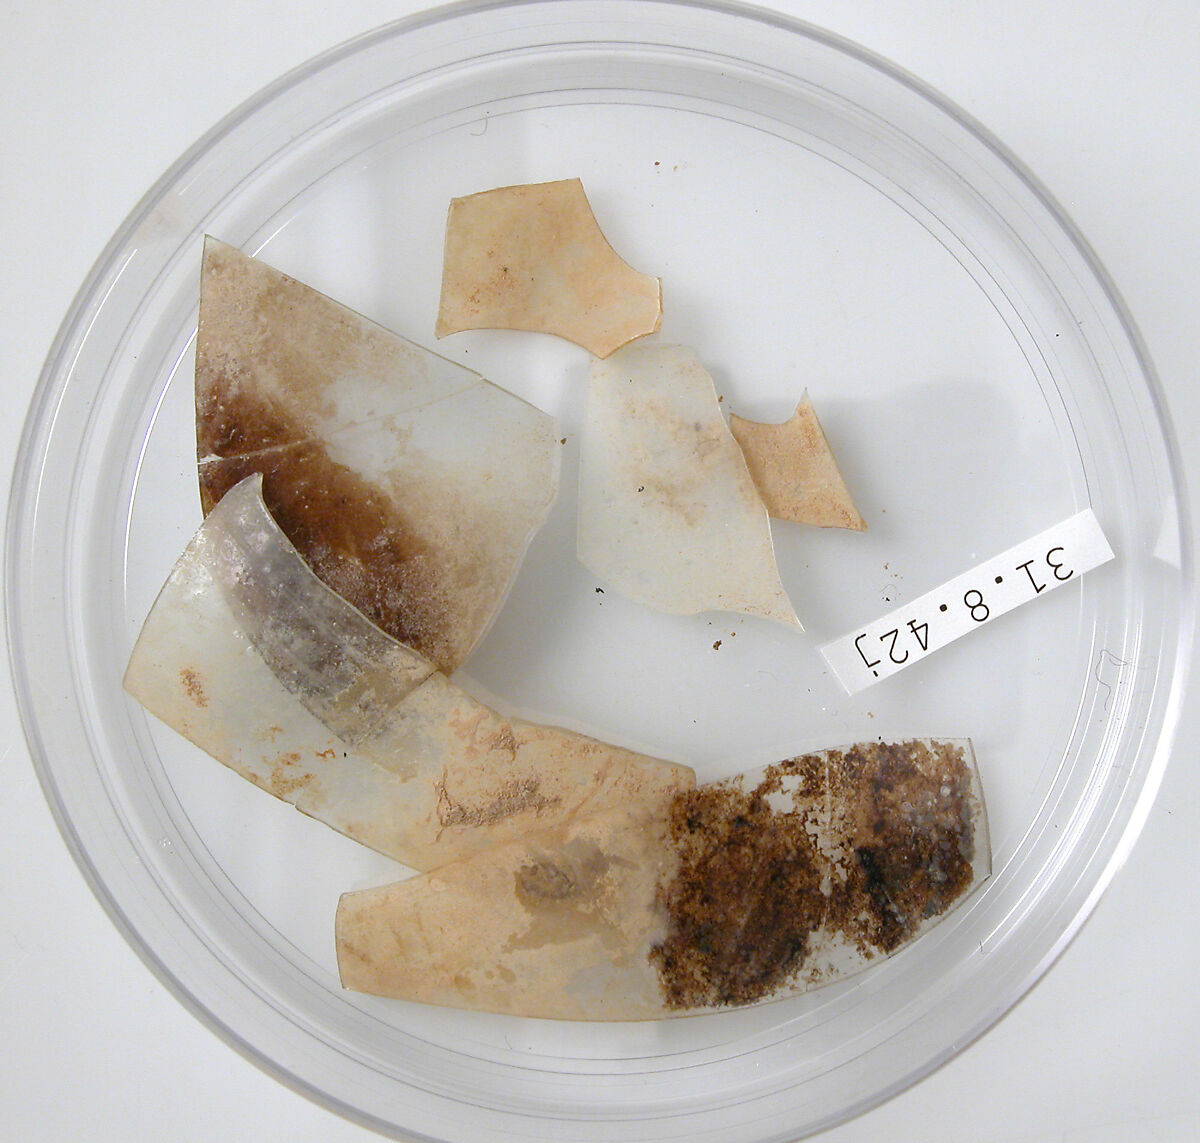 Glass Fragments, Glass, Coptic 